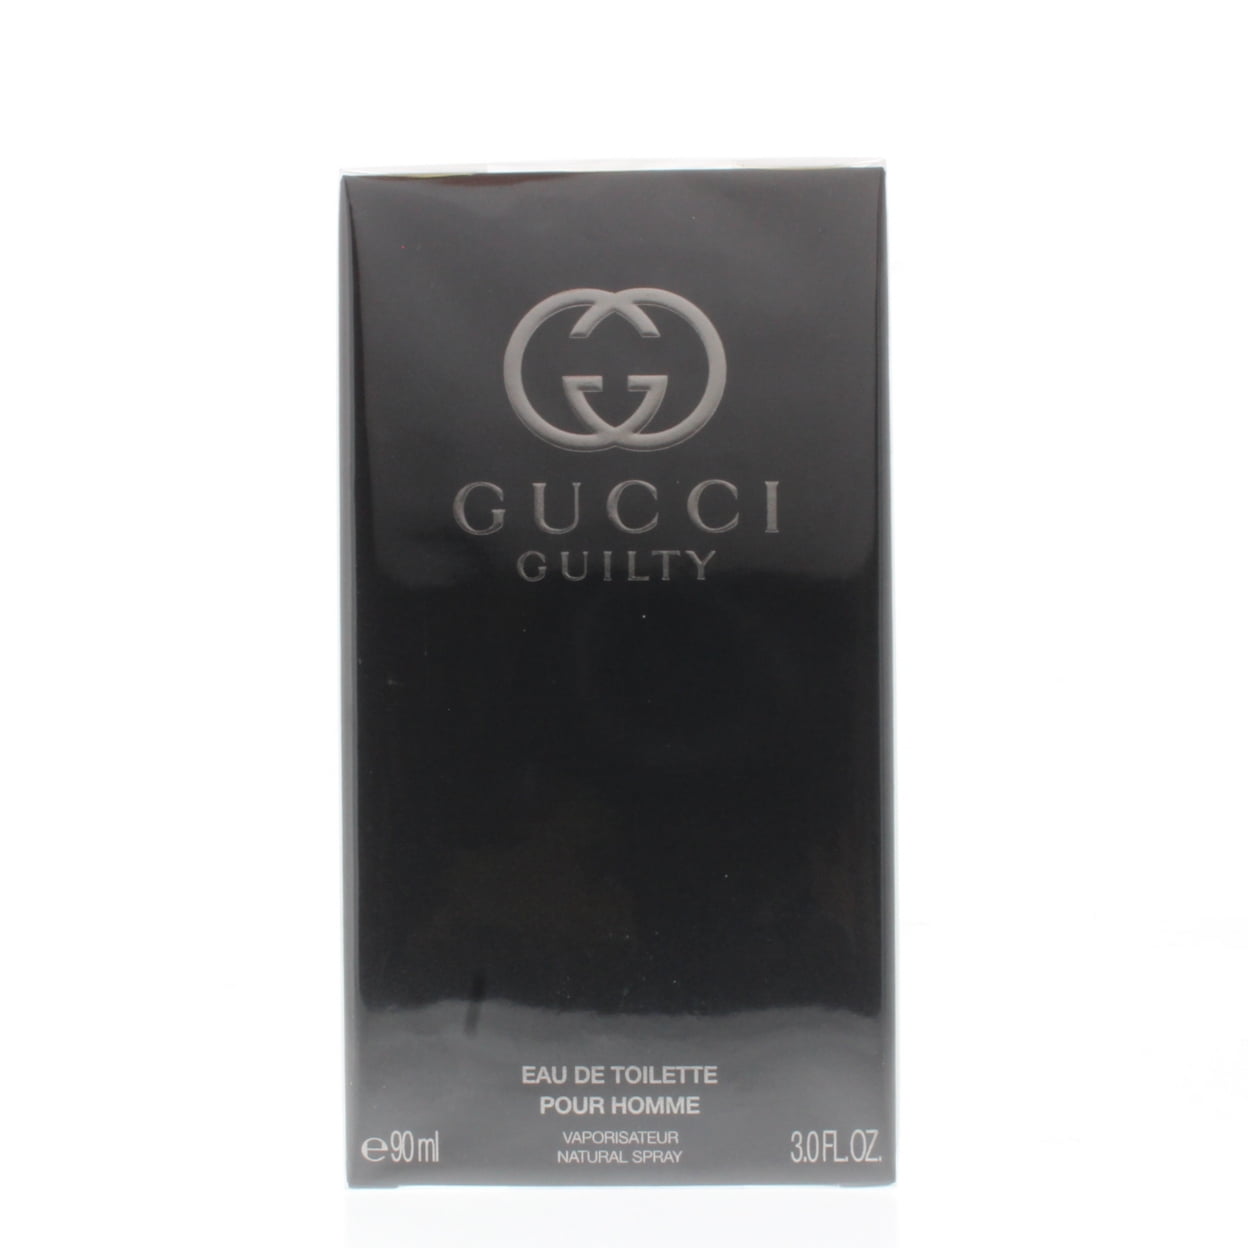 GetUSCart- Gucci Pour Homme 3.0 oz Eau de Toilette Spray